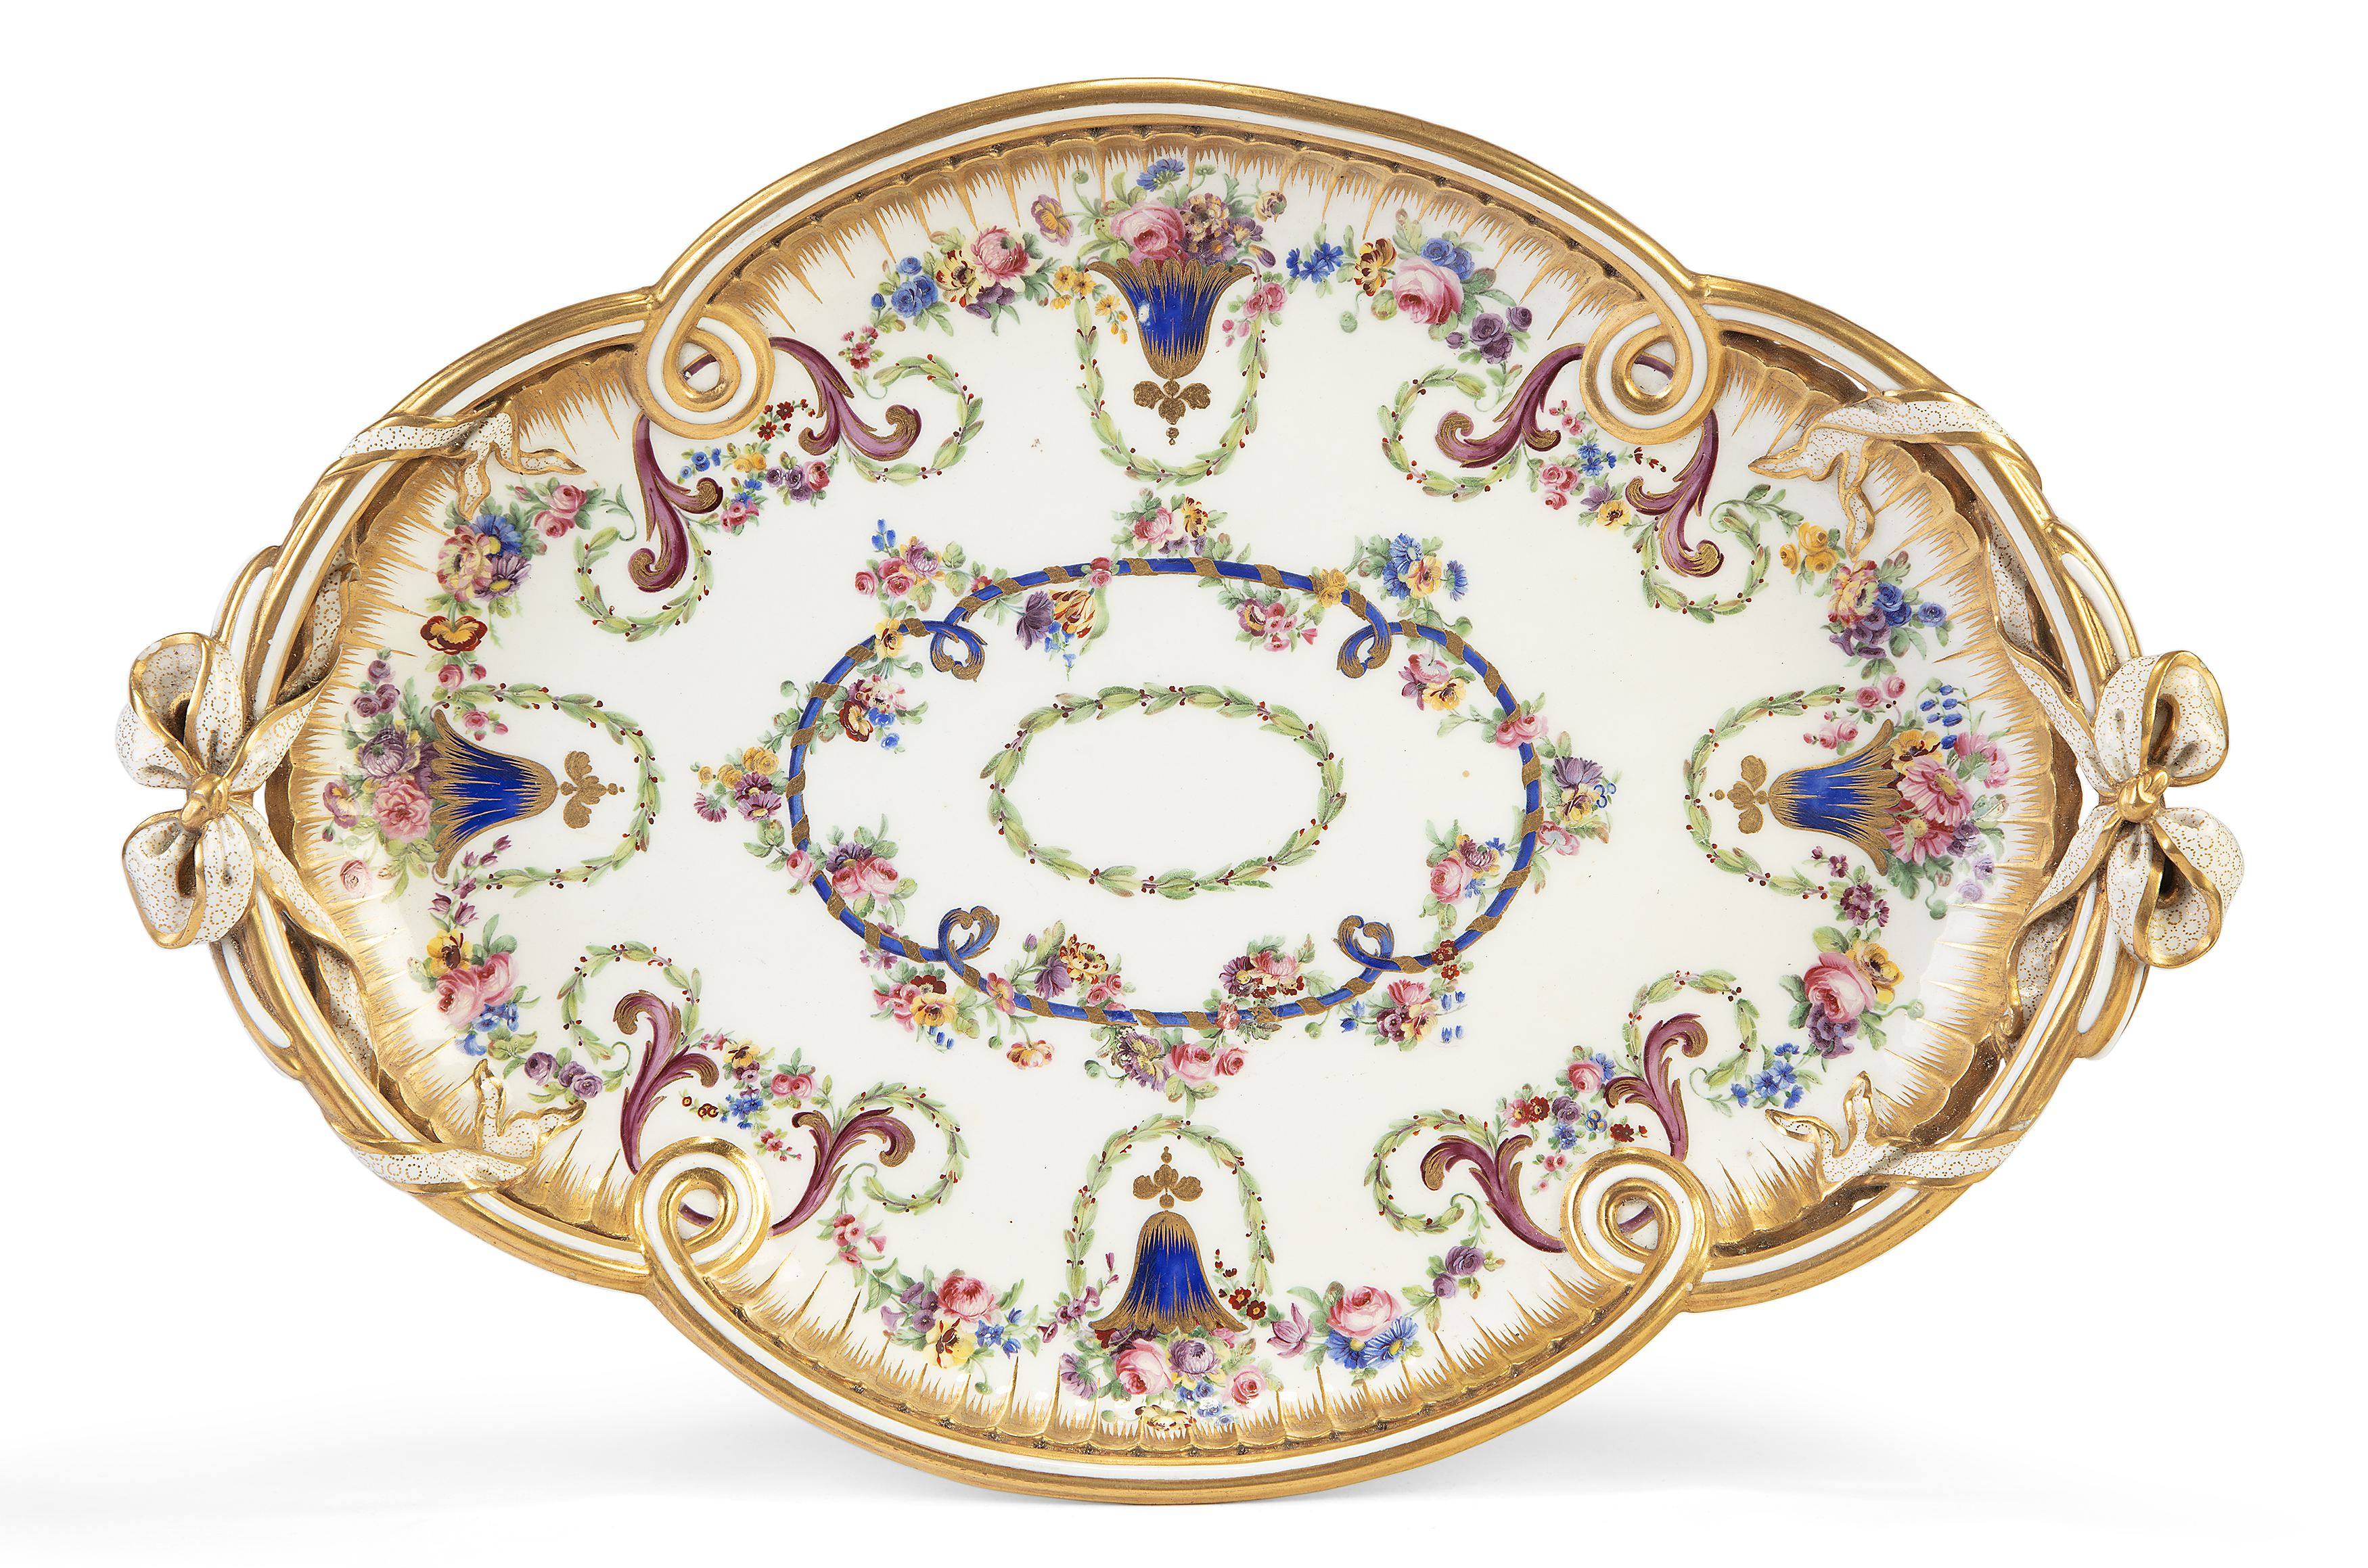 A Sèvres (hard paste) porcelain two-handled quatrefoil tray (plateau ‘à rubans’), 1779, puce inte...